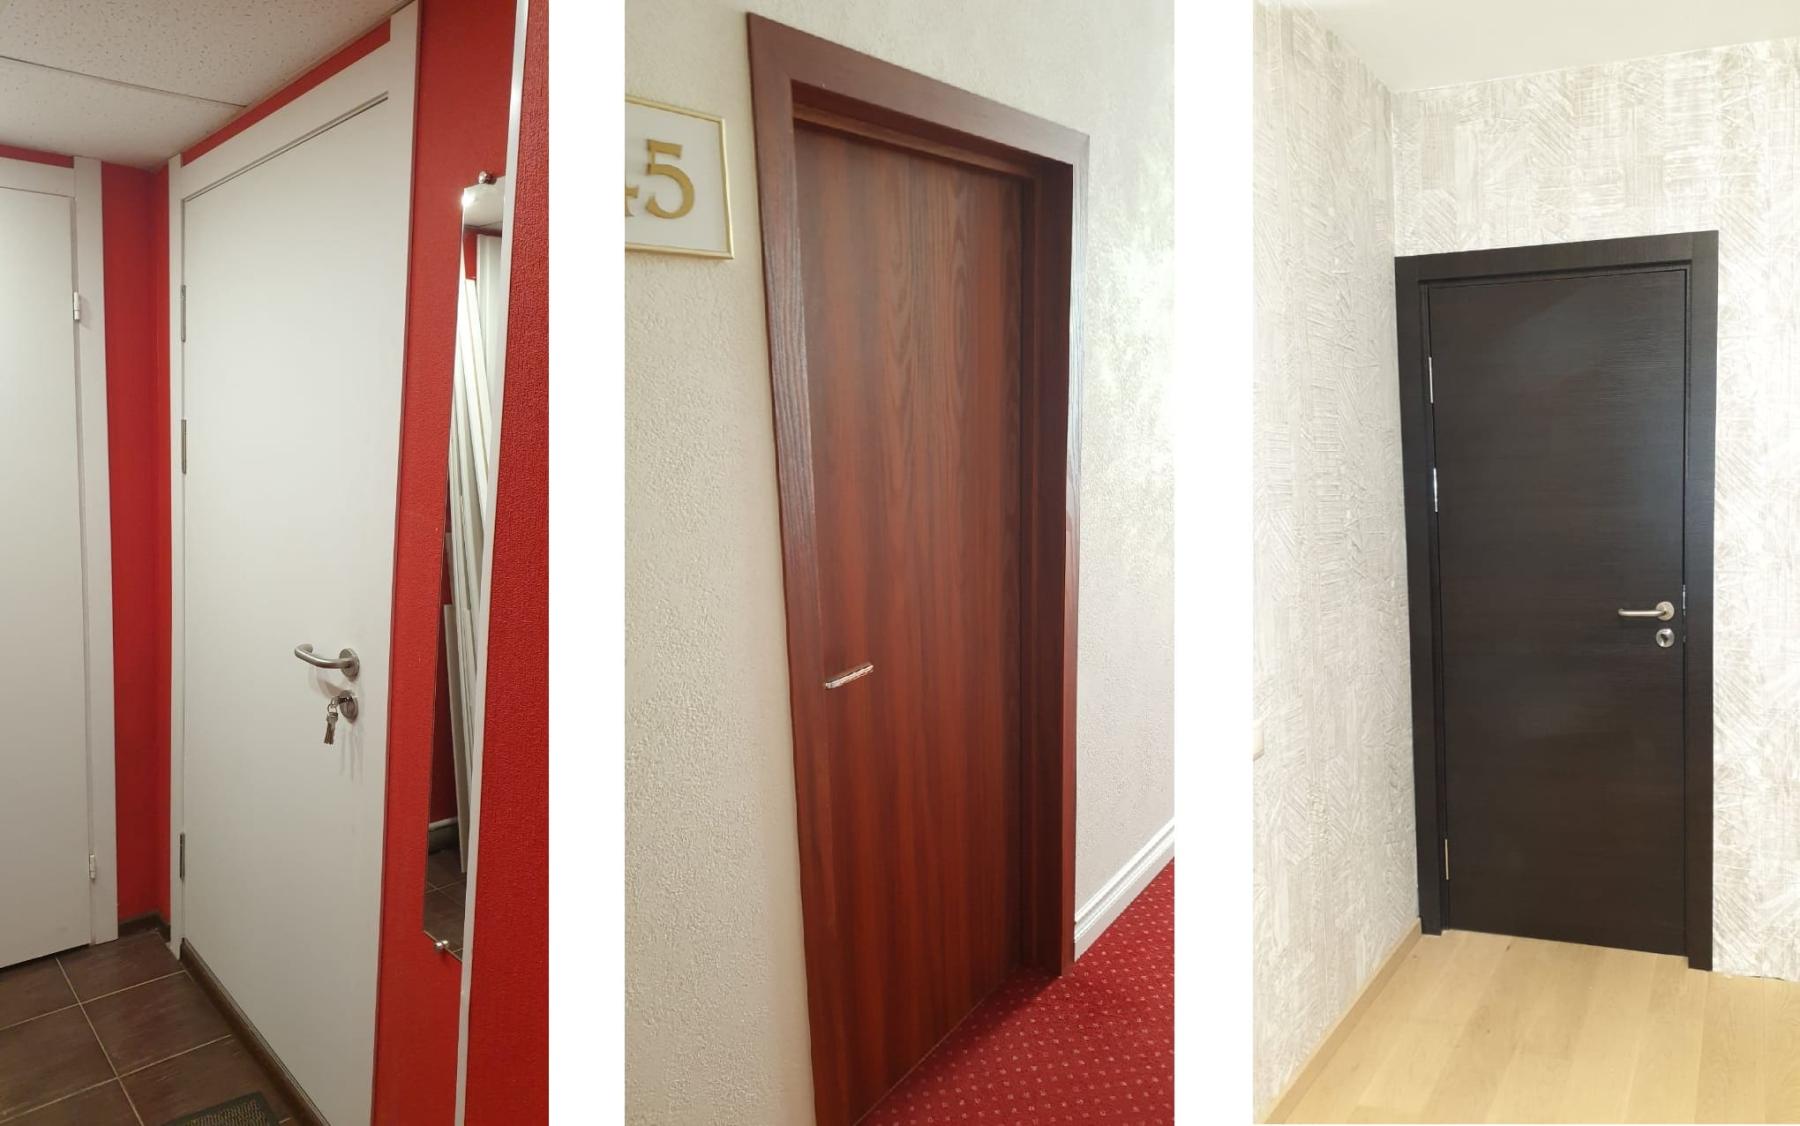 Распашные двери Ostium Doors, установленные в номерах гостиниц, хостелов, мотелей